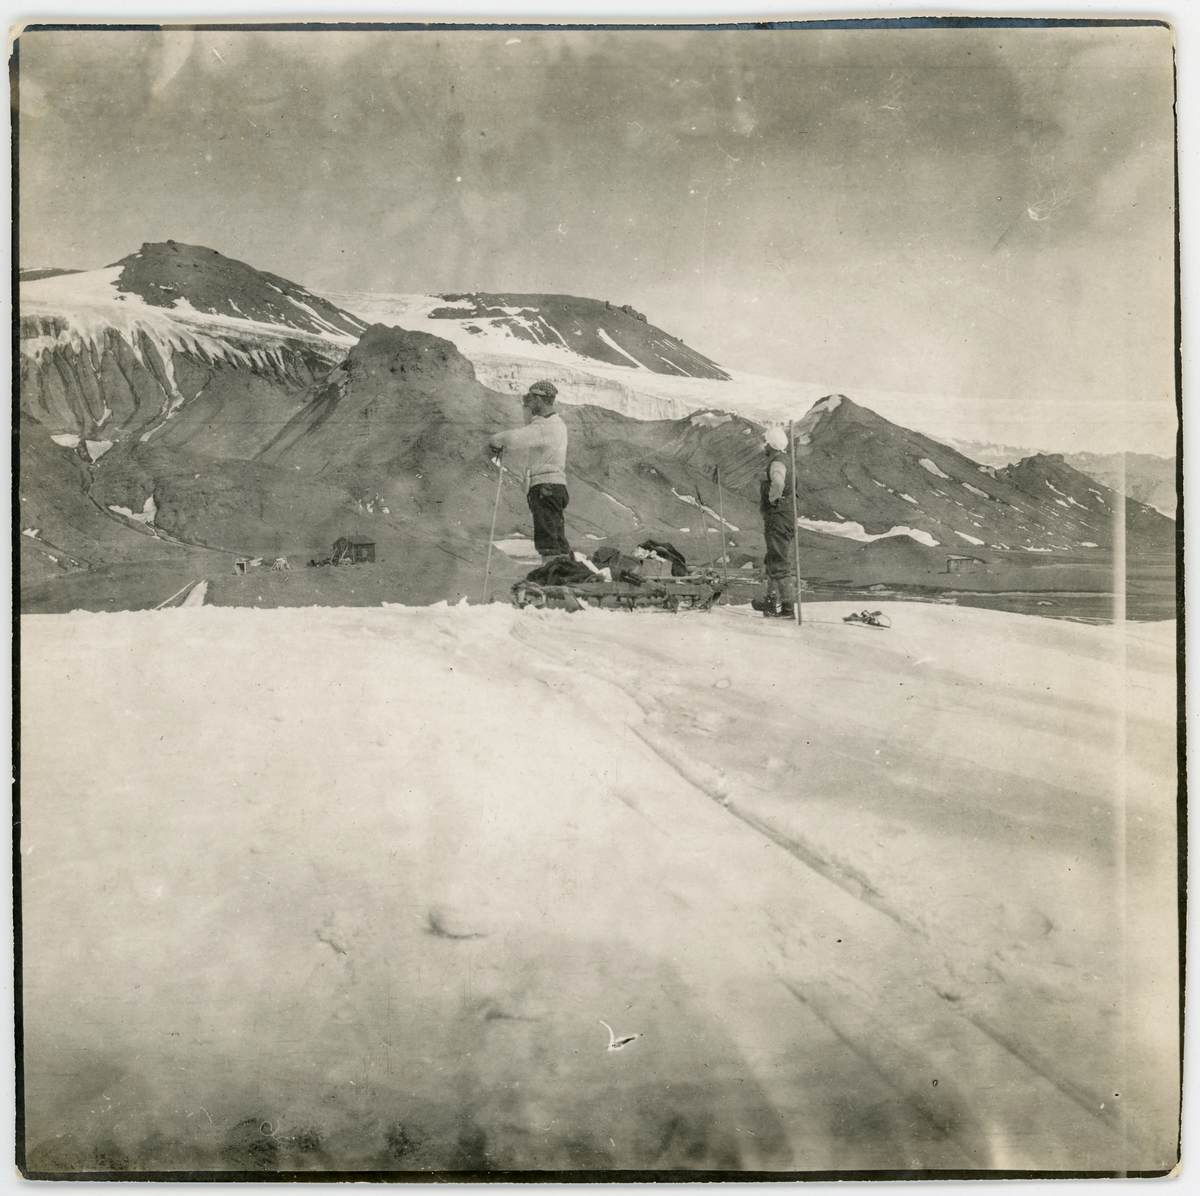 Medlemmar ur Antarktiska undsättningsexpeditionen vid Snow Hill den 4 december 1903. Påskrift på originalets baksida: "Vid målet! Snow Hill 4/12 1903"